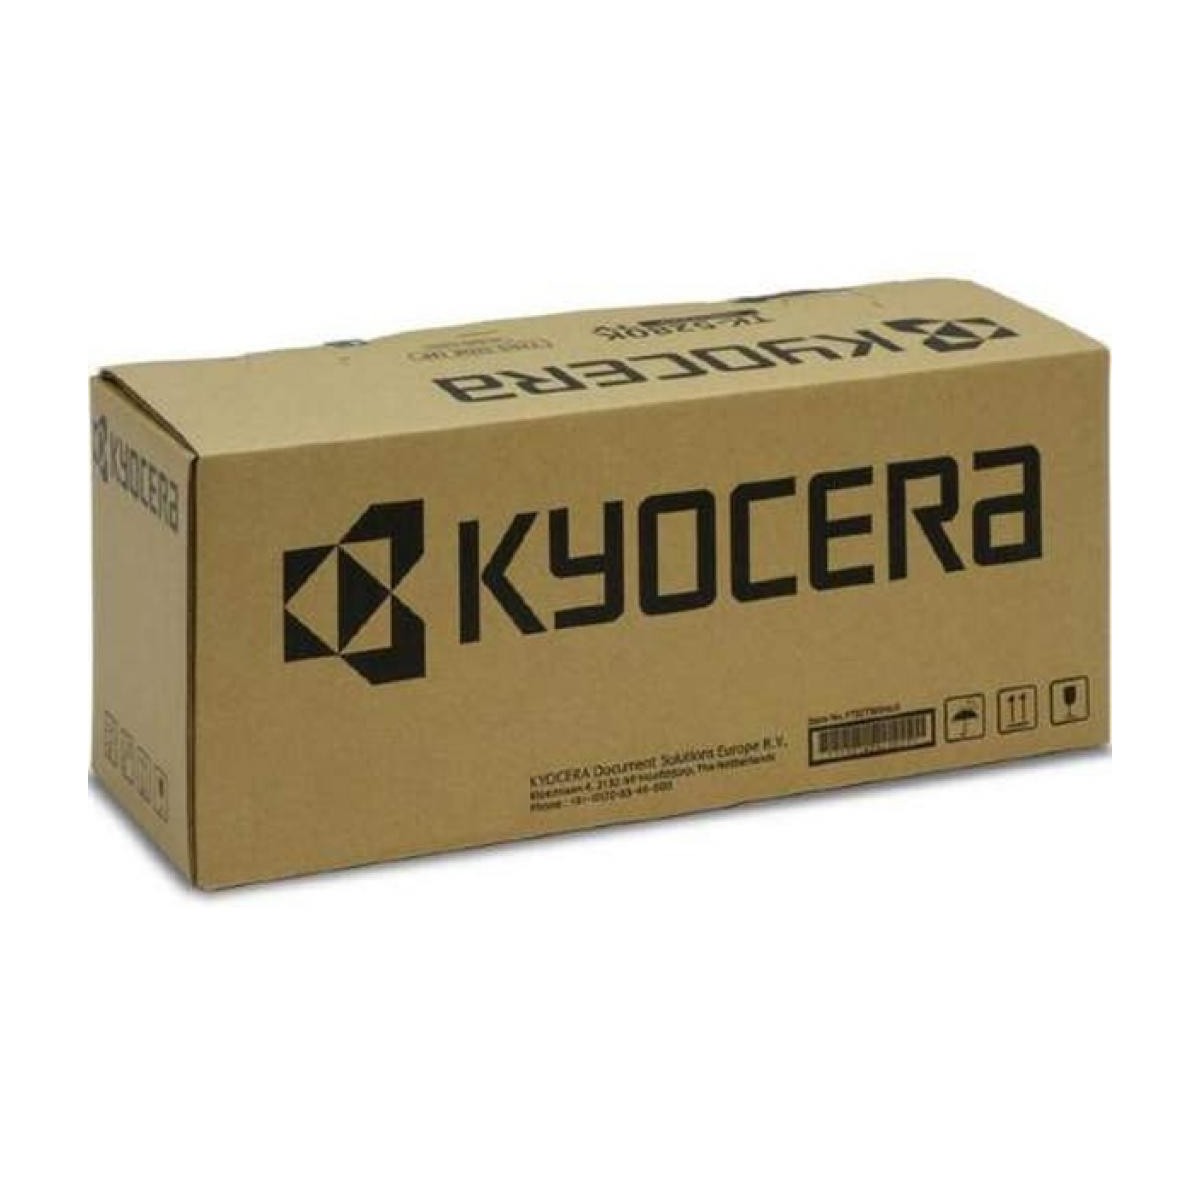 Kyocera FK-5140 - Laser - Kyocera - M6030/M6035/M6230/P6130 - 1 pc(s)